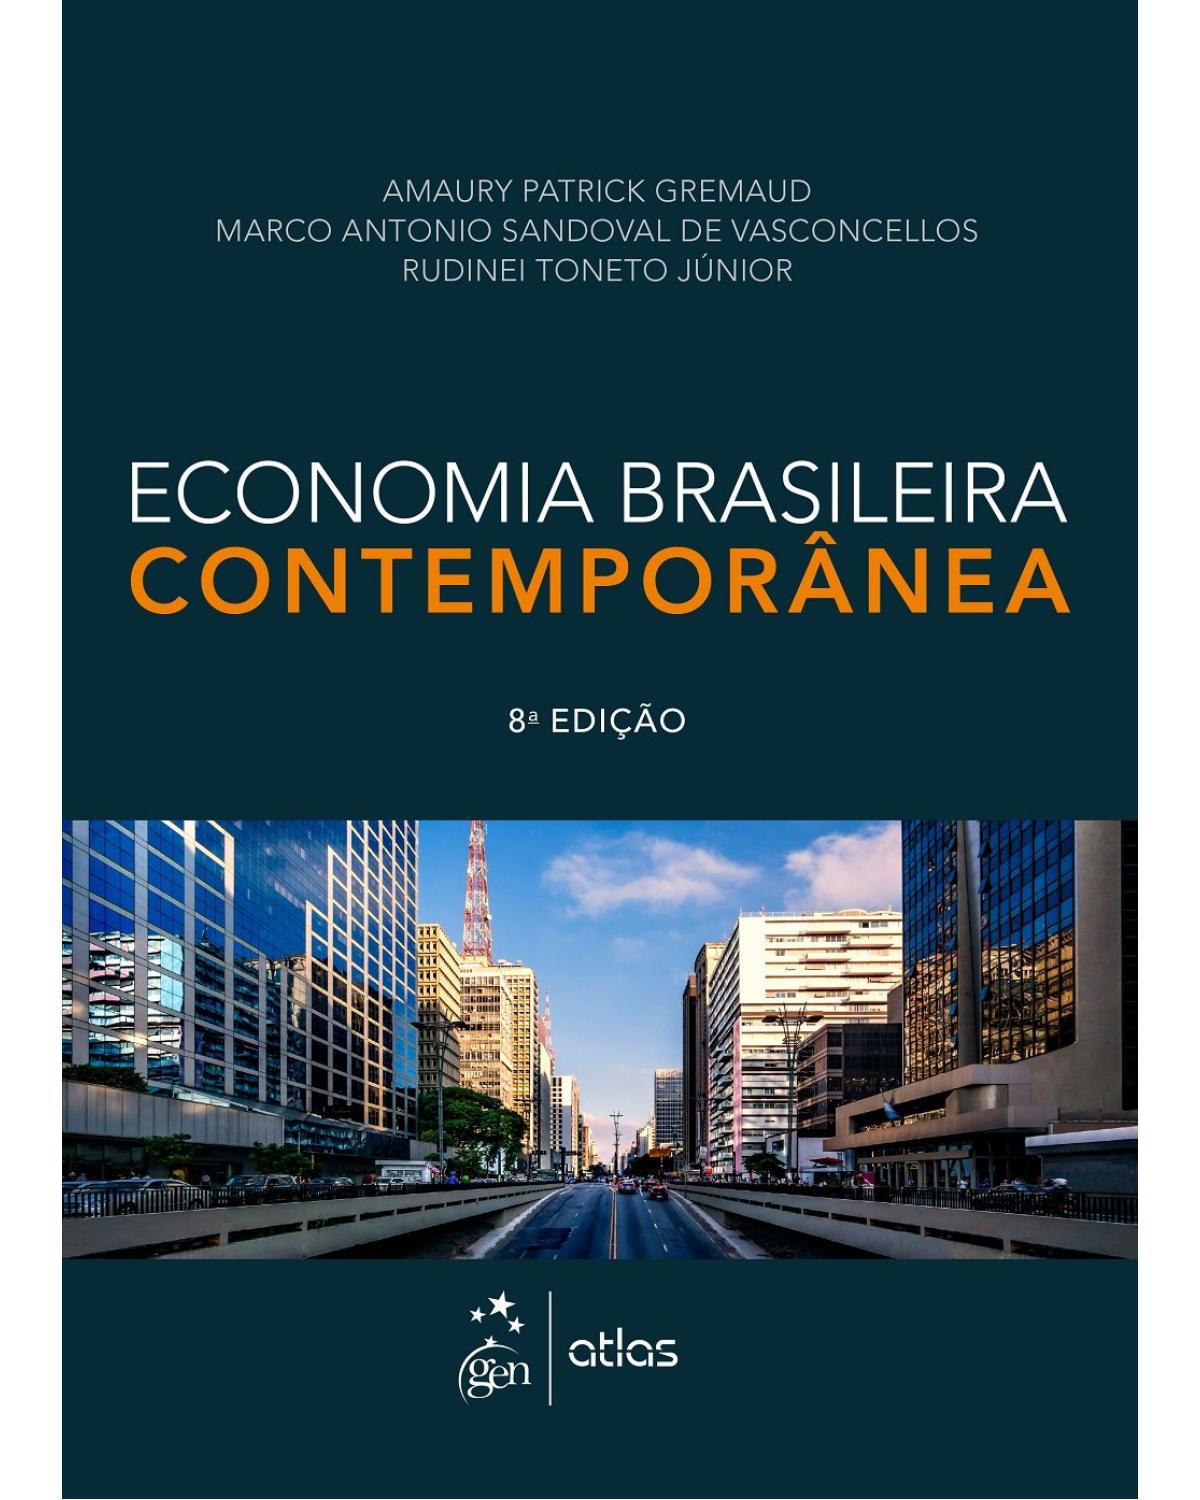 Economia brasileira contemporânea - 8ª Edição | 2017